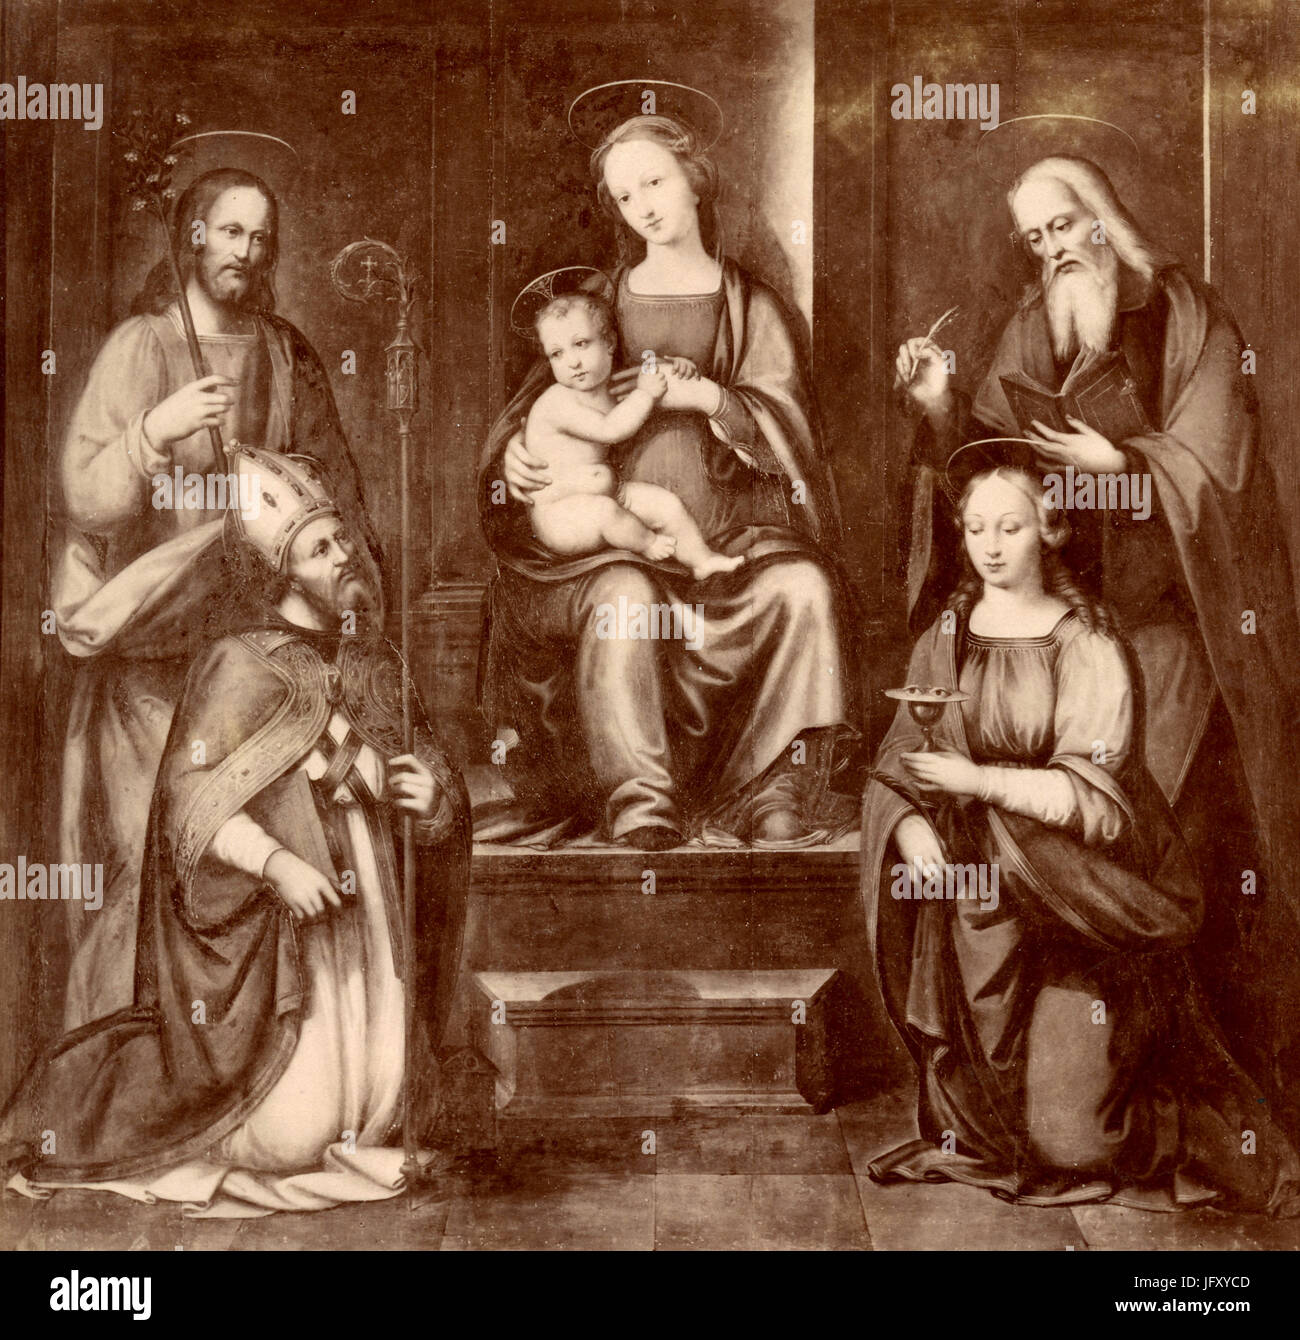 Vierge et enfant avec les Saints, la peinture par Francesco Granacci, Chartreuse de Florence, Italie Banque D'Images